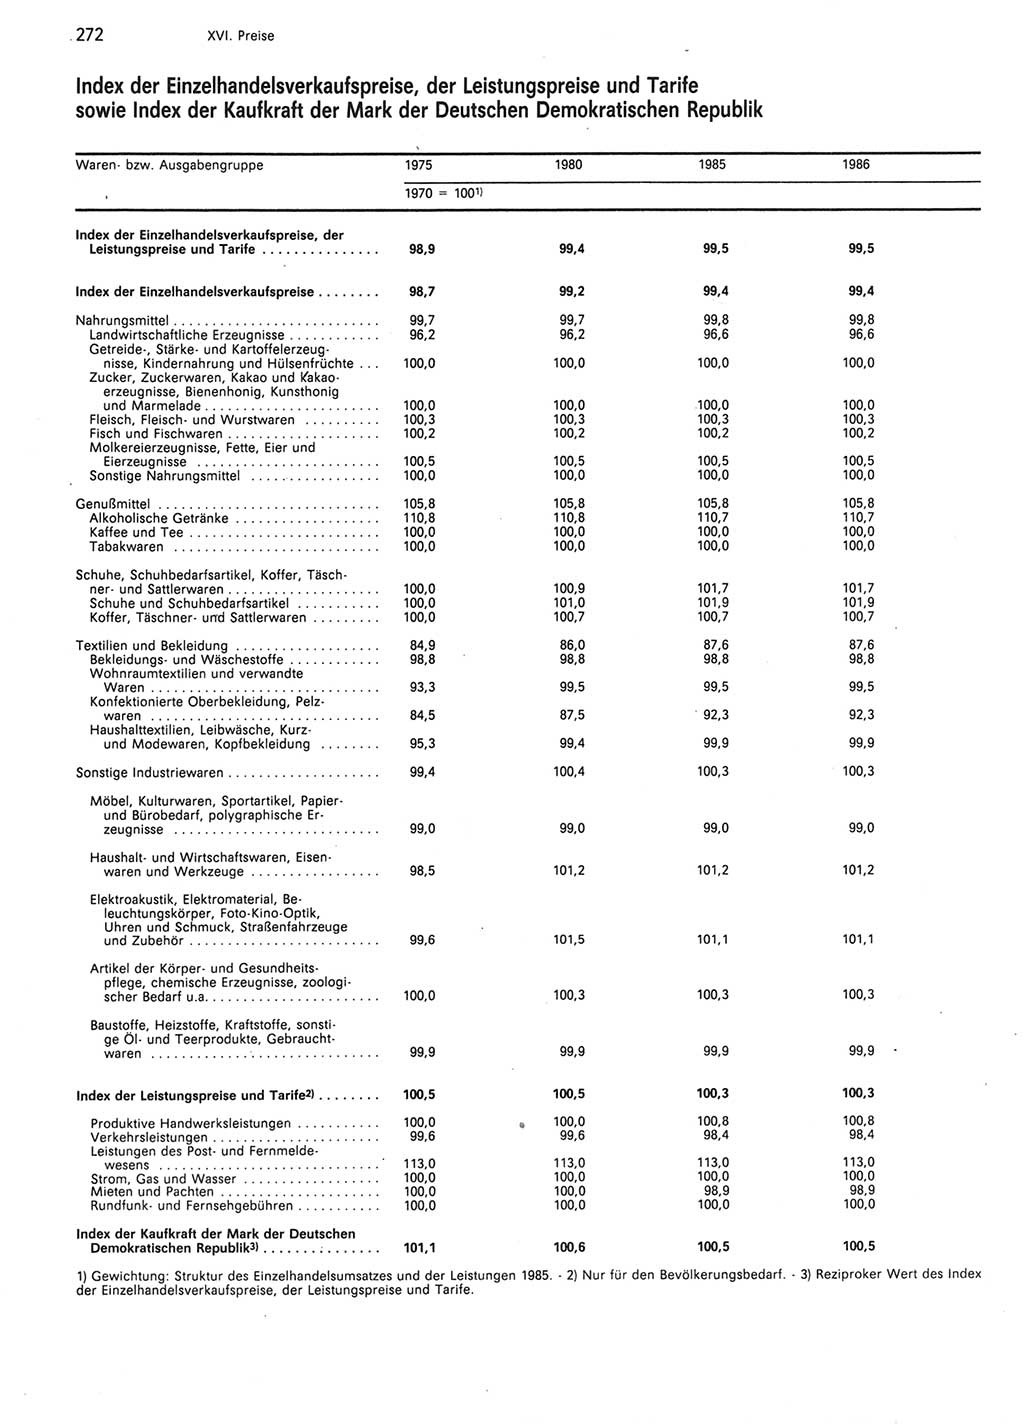 Statistisches Jahrbuch der Deutschen Demokratischen Republik (DDR) 1987, Seite 272 (Stat. Jb. DDR 1987, S. 272)